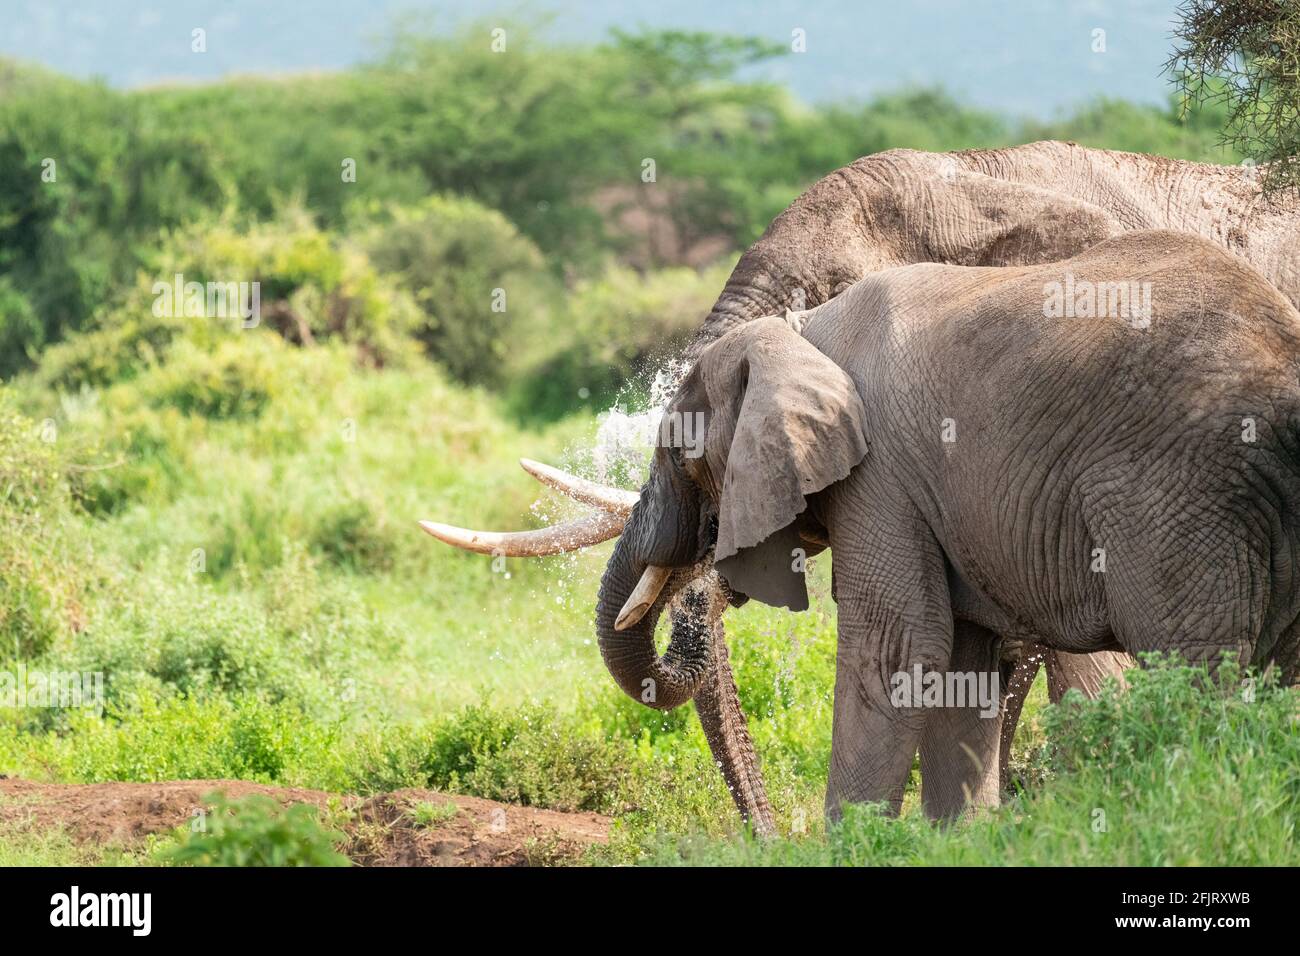 Les éléphants d'Afrique mâles et femelles (Loxodonta) boivent de l'eau et se baignant d'un petit étang dans le parc national d'amboseli, Kenya, le jour de soleil à la lumière du jour Banque D'Images